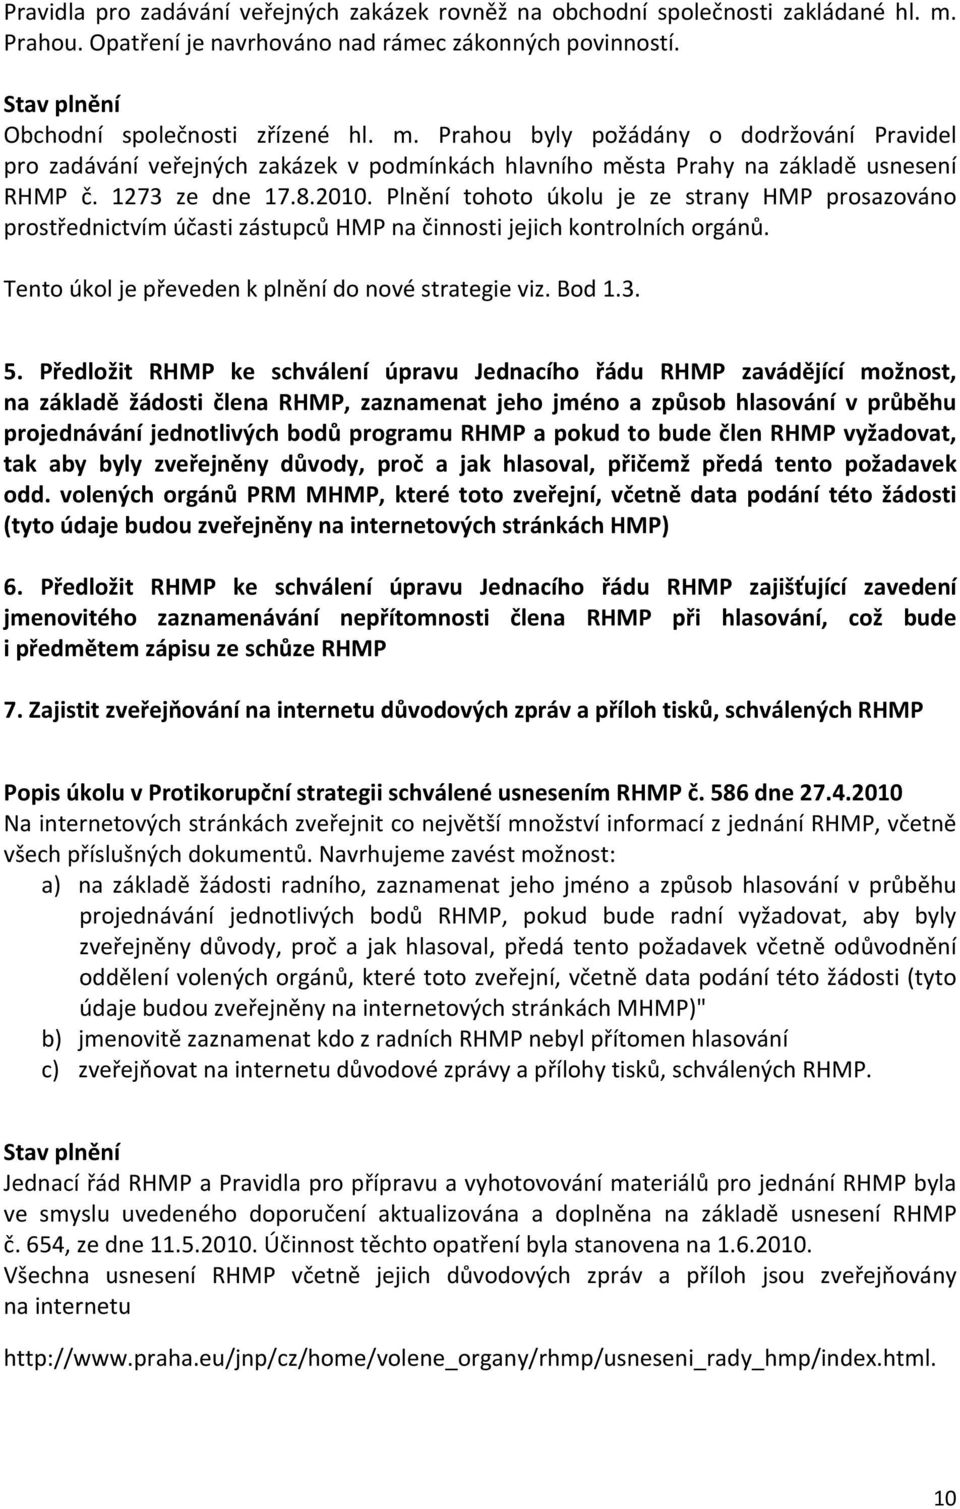 Prahou byly požádány o dodržování Pravidel pro zadávání veřejných zakázek v podmínkách hlavního města Prahy na základě usnesení RHMP č. 1273 ze dne 17.8.2010.